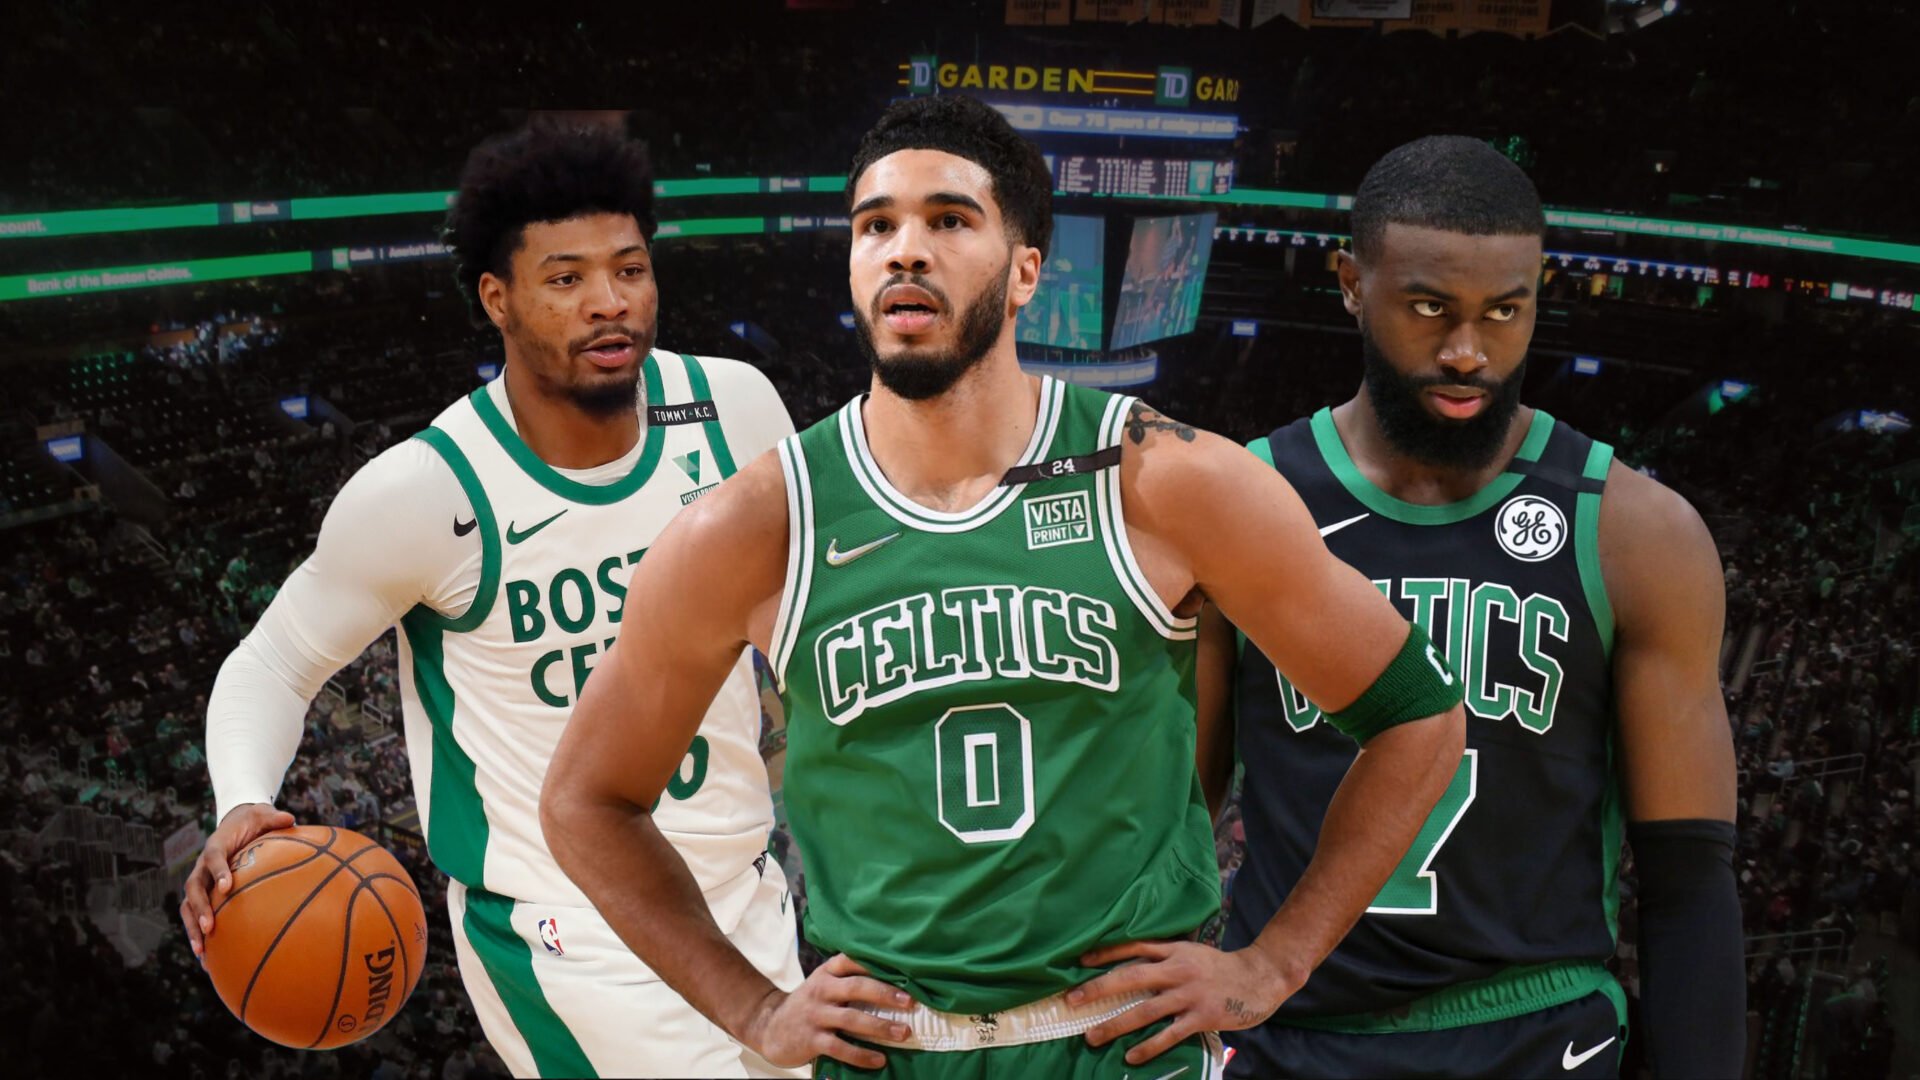 Les Celtics de Boston montrent enfin de quoi ils sont capables